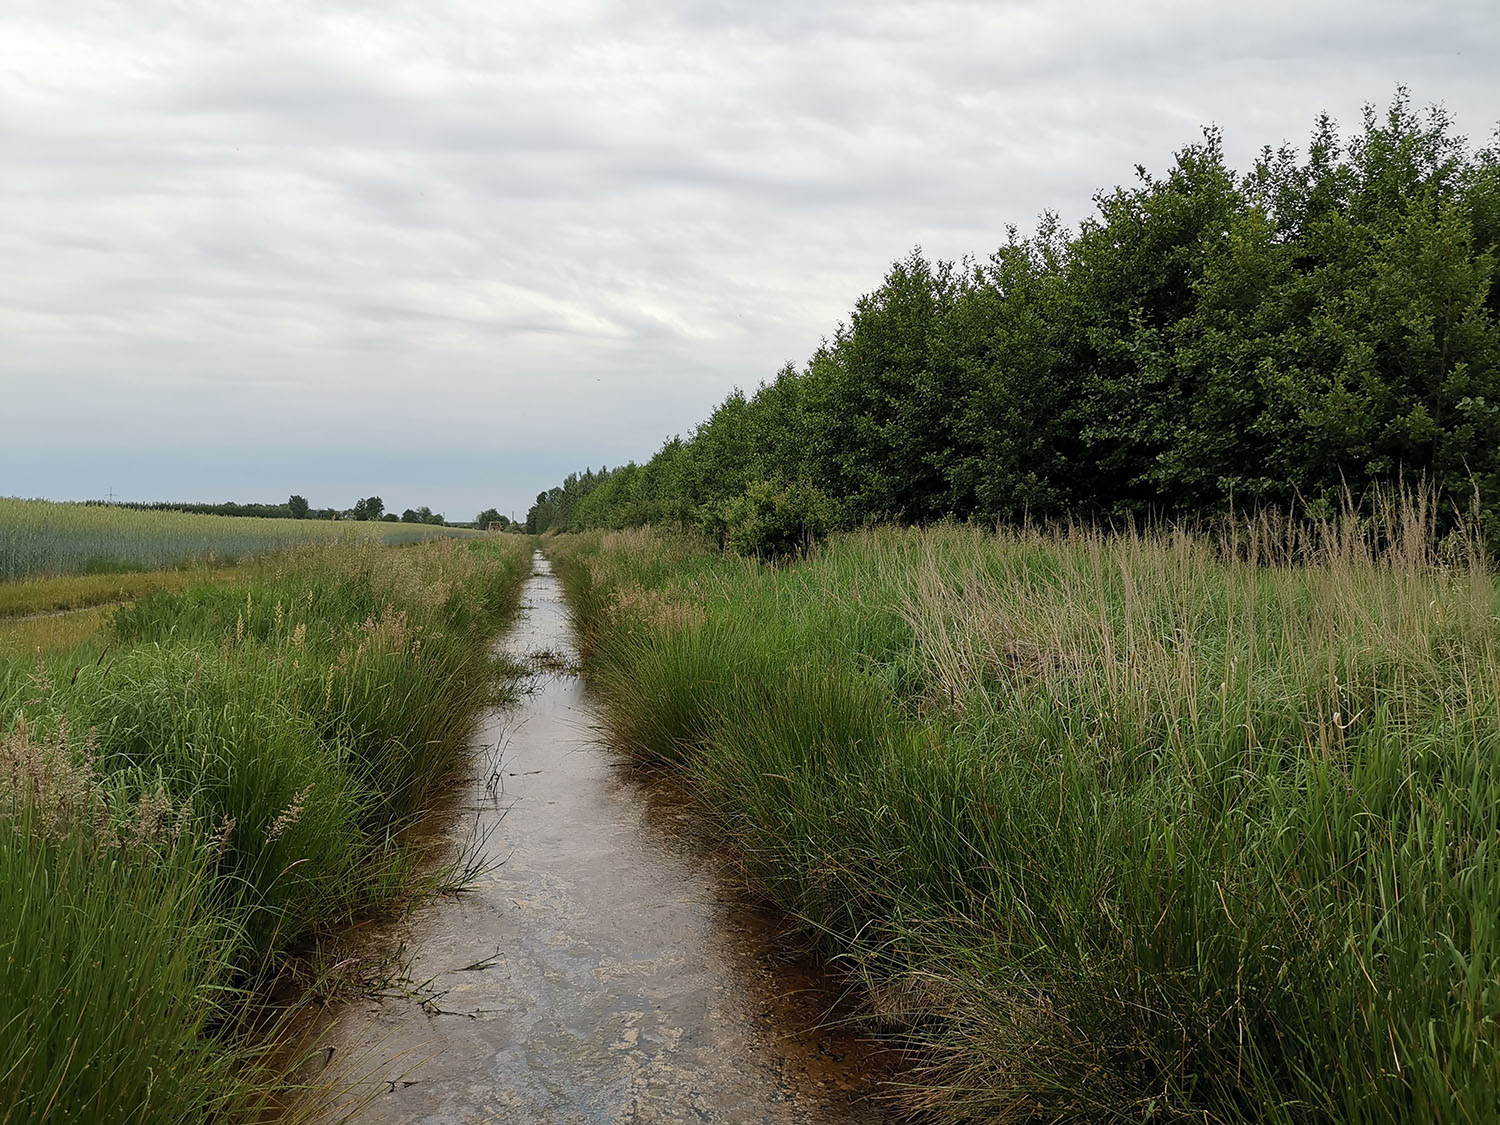 Das Bild zeigt in der Mitte ein kleines grades Fließgewässer, rechts davon junge Bäume, links ein Getreidefeld.